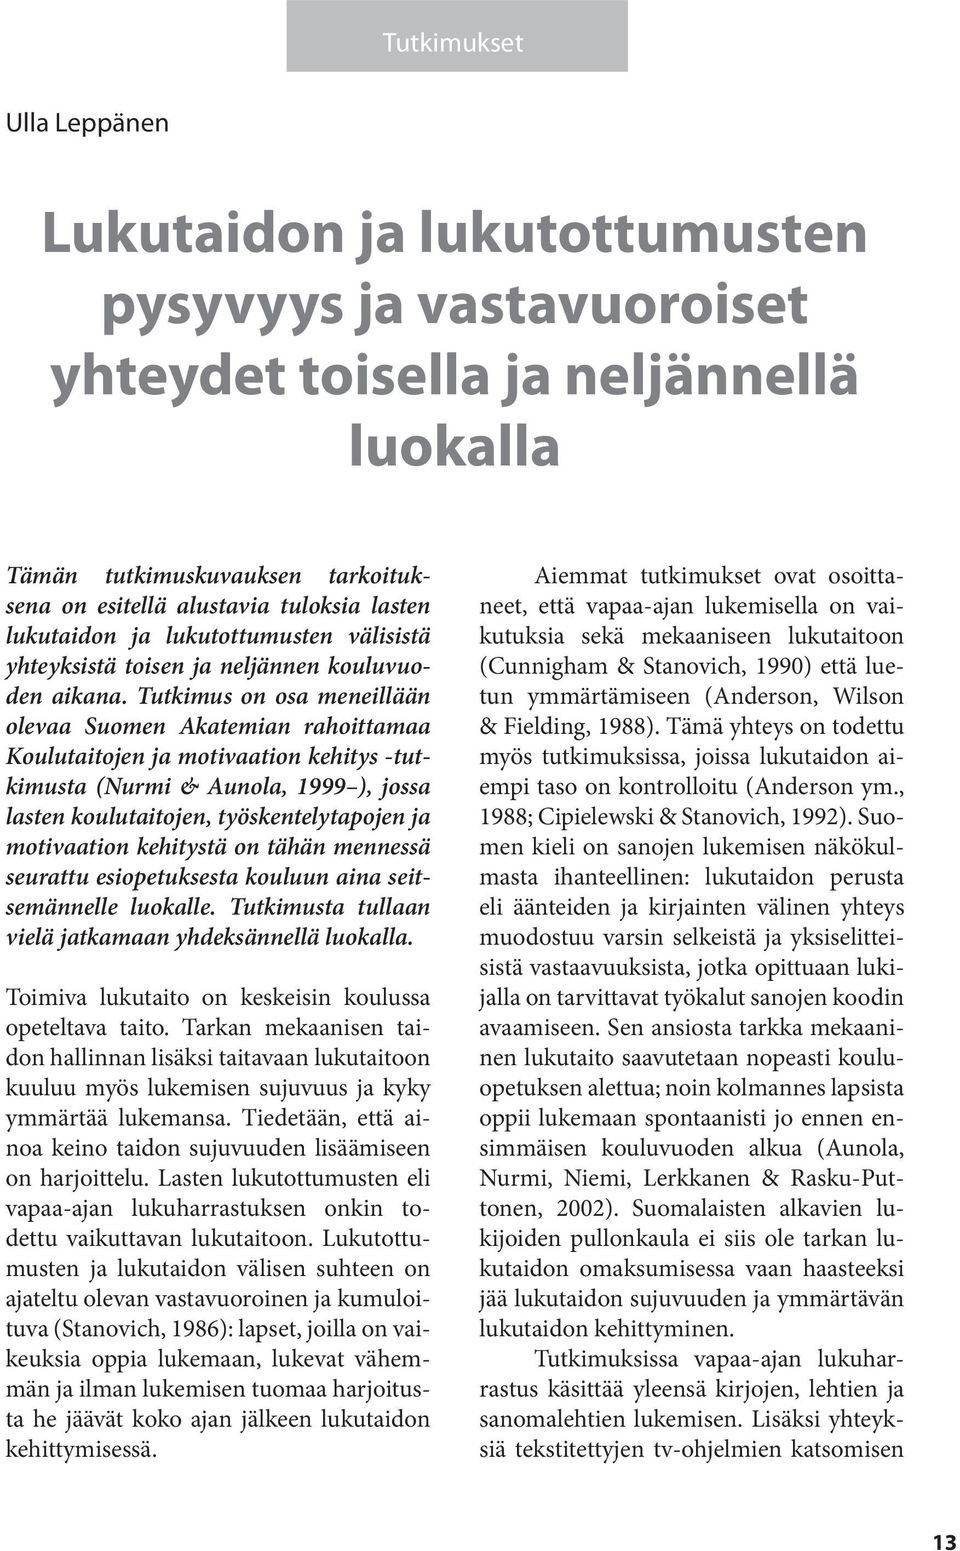 Tutkimus on osa meneillään olevaa Suomen Akatemian rahoittamaa Koulutaitojen ja motivaation kehitys -tutkimusta (Nurmi & Aunola, 1999 ), jossa lasten koulutaitojen, työskentelytapojen ja motivaation